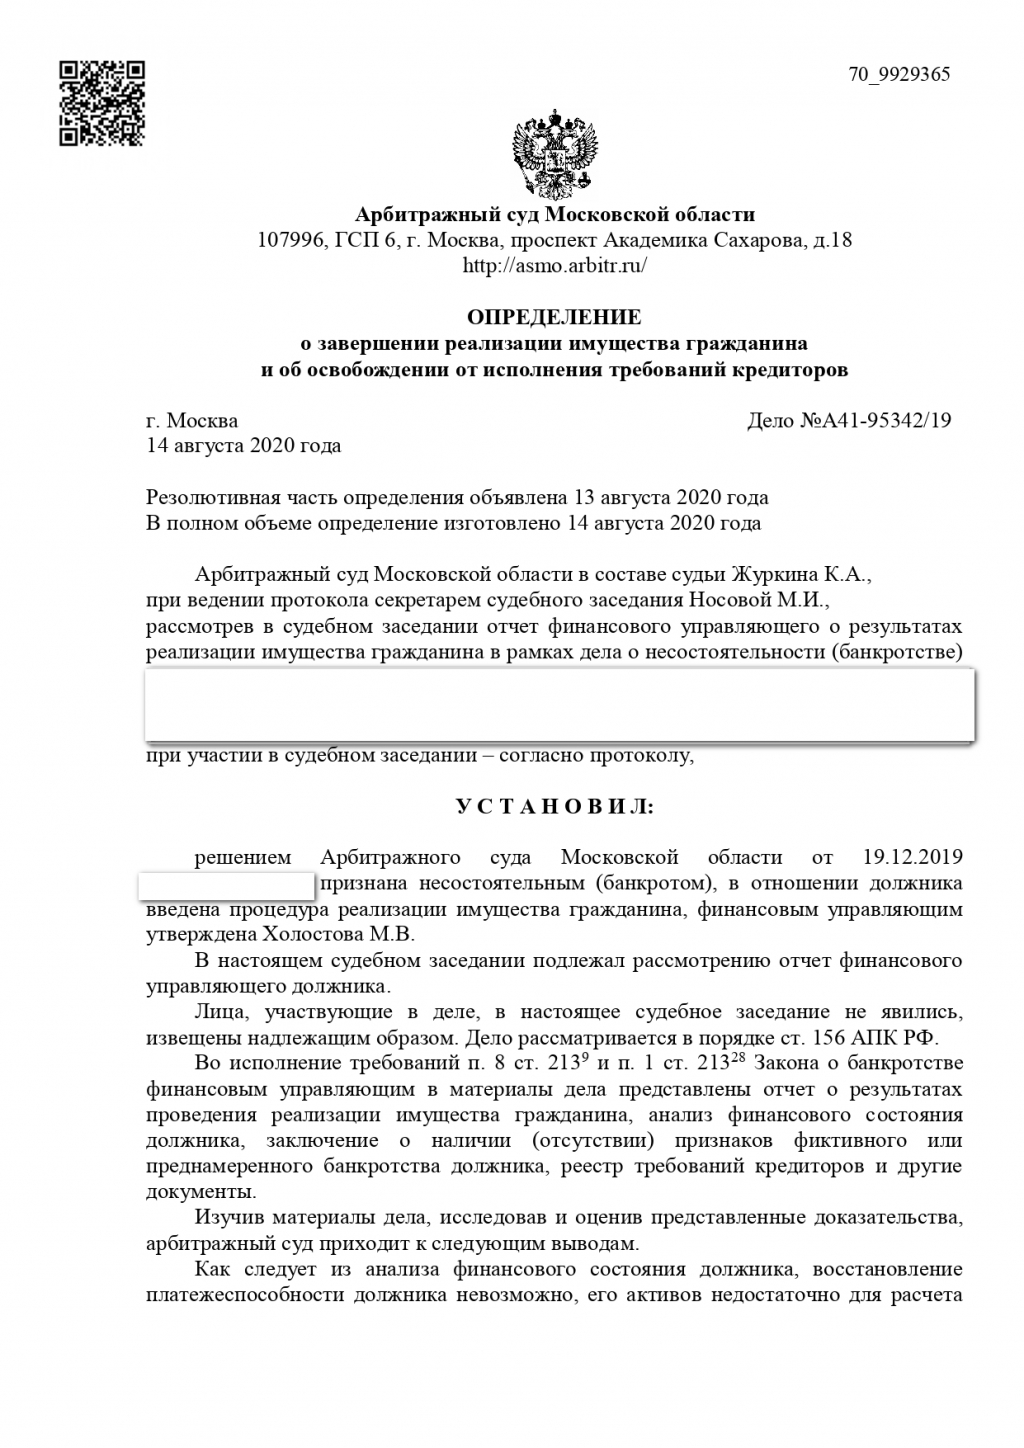 Банкрот Консалт - Успешно закрыли дело № А41-95342/2019 без долгов